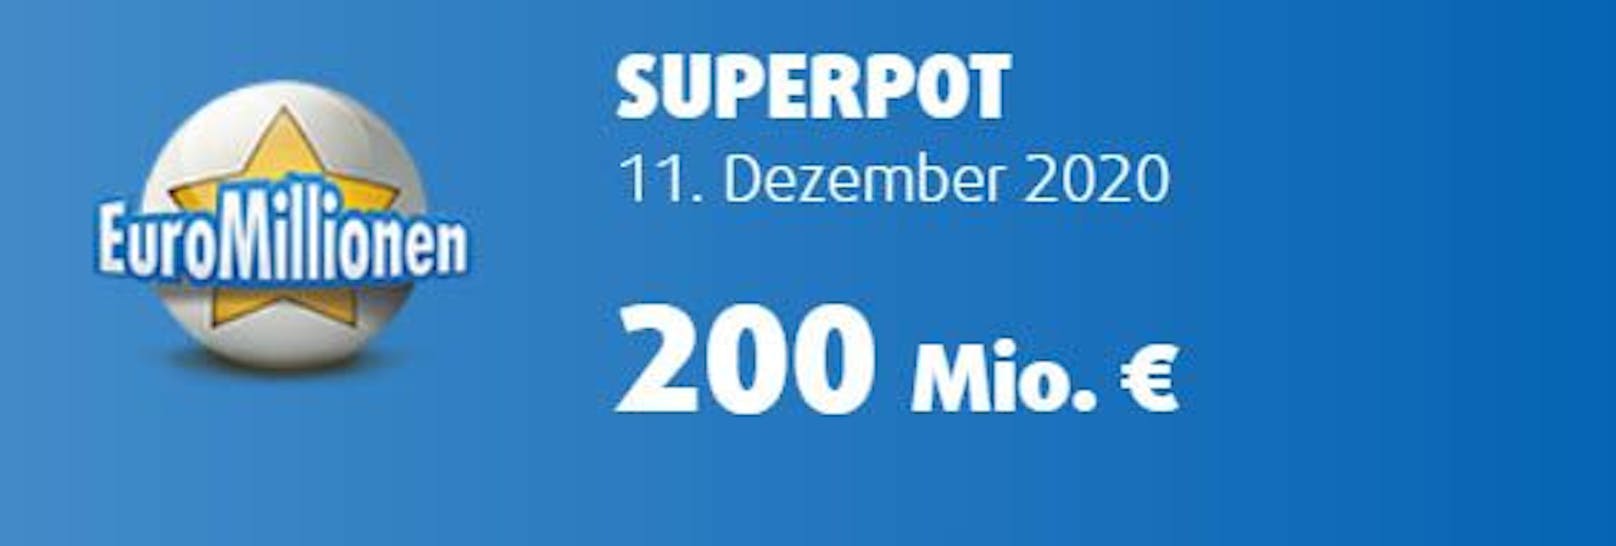 EuroMillionen-Superpot um 200 Millionen Euro.